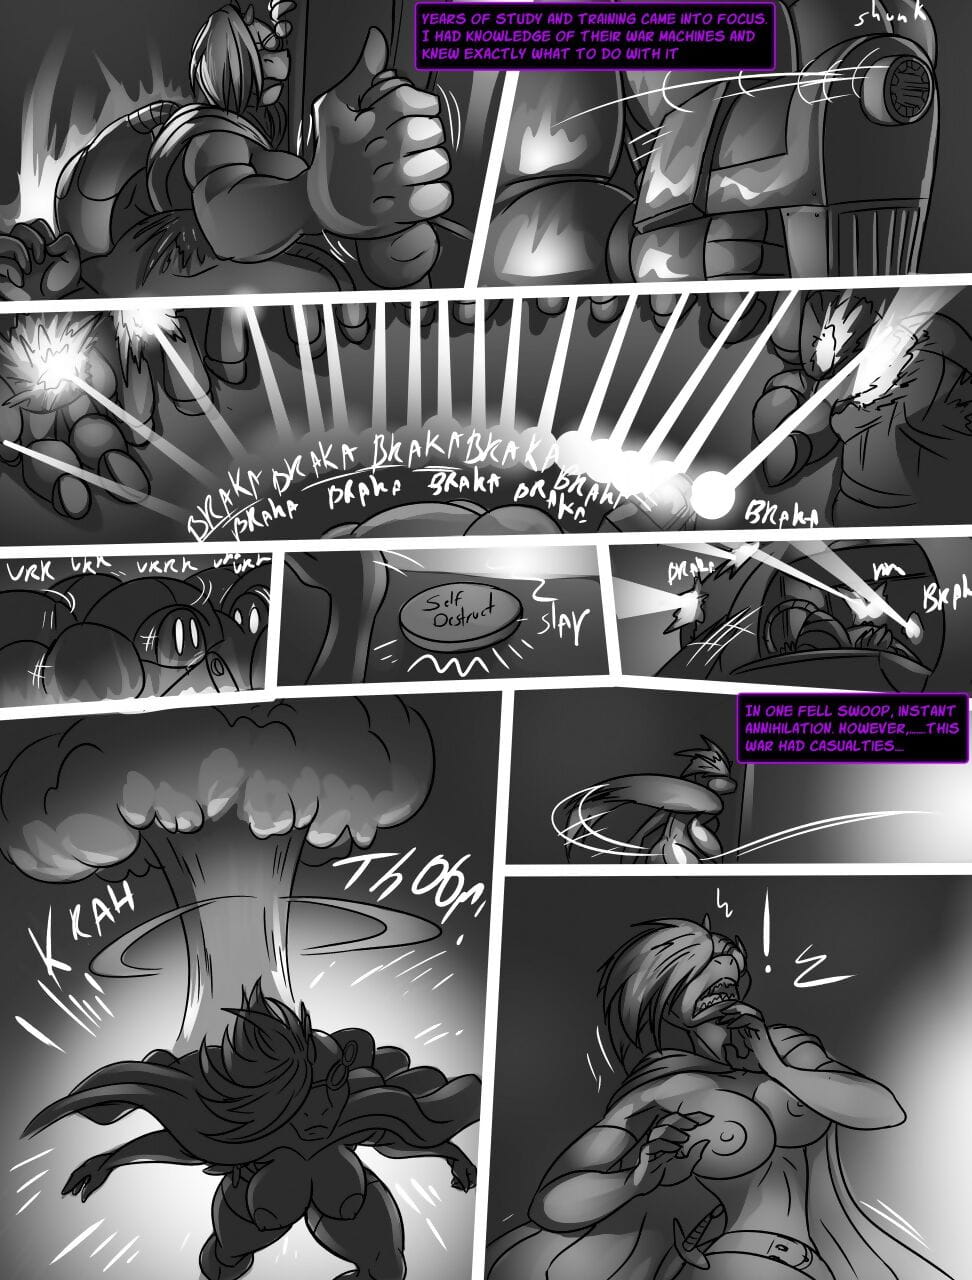 thebigbadwolf वृद्धि के के अंधेरे देवी page 1